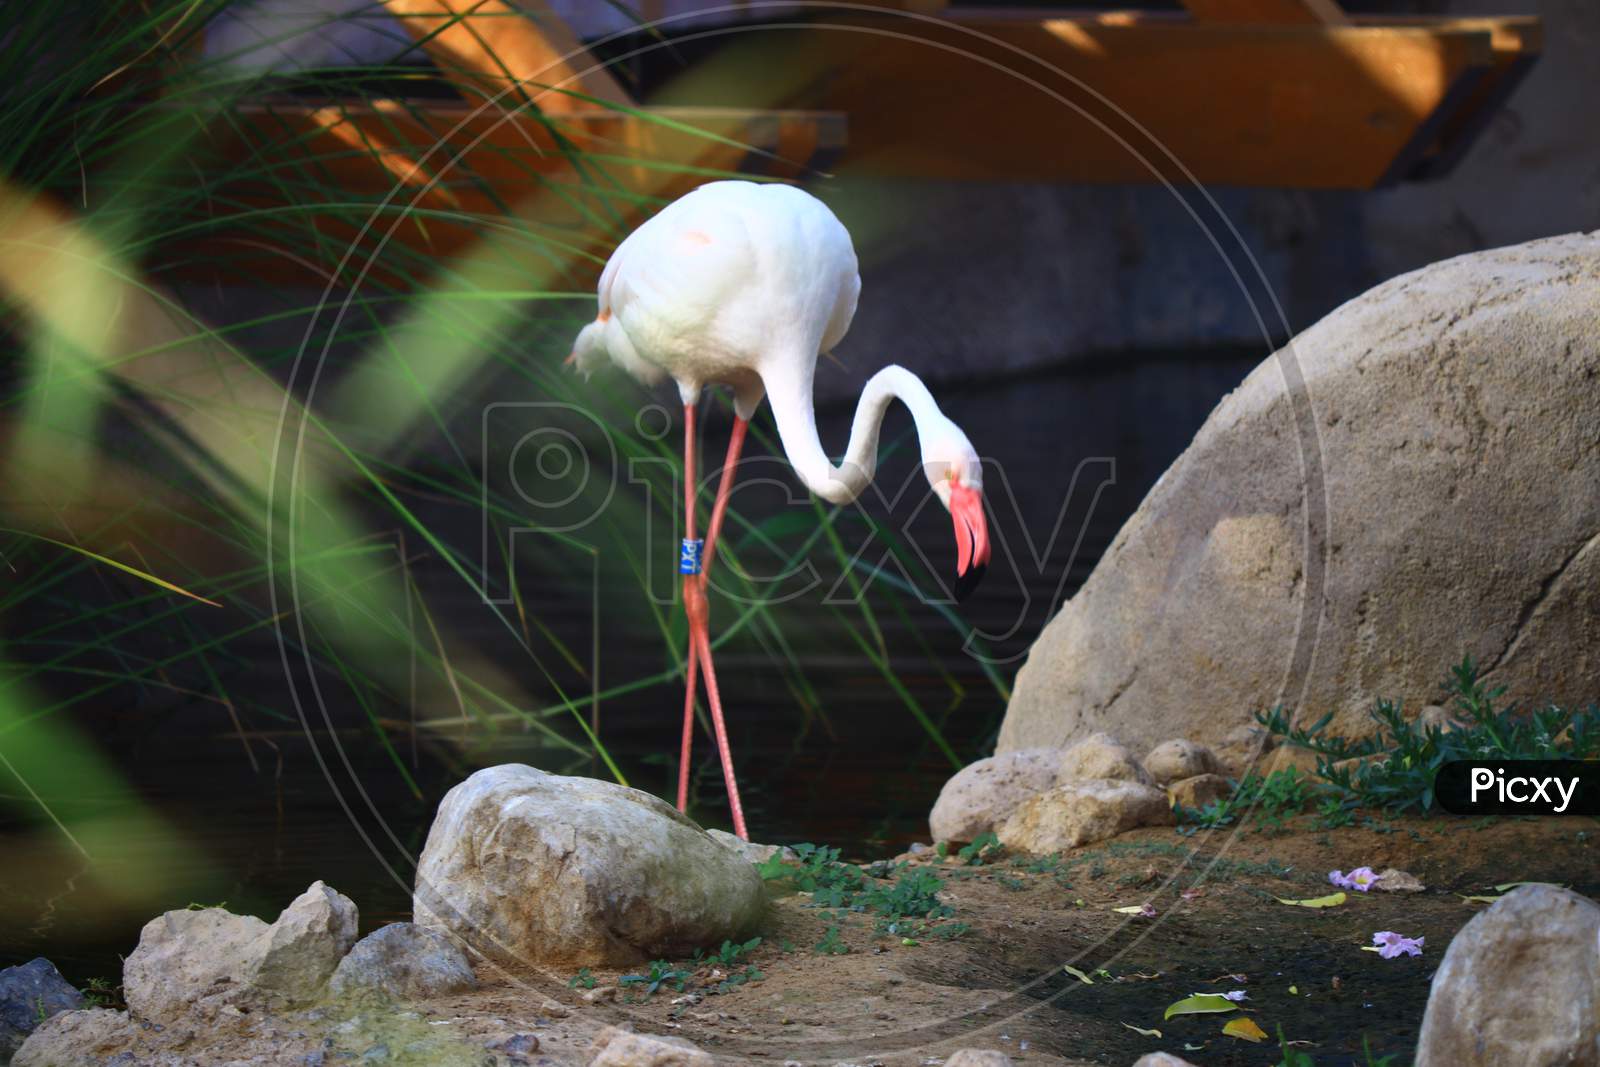 A Flamingo